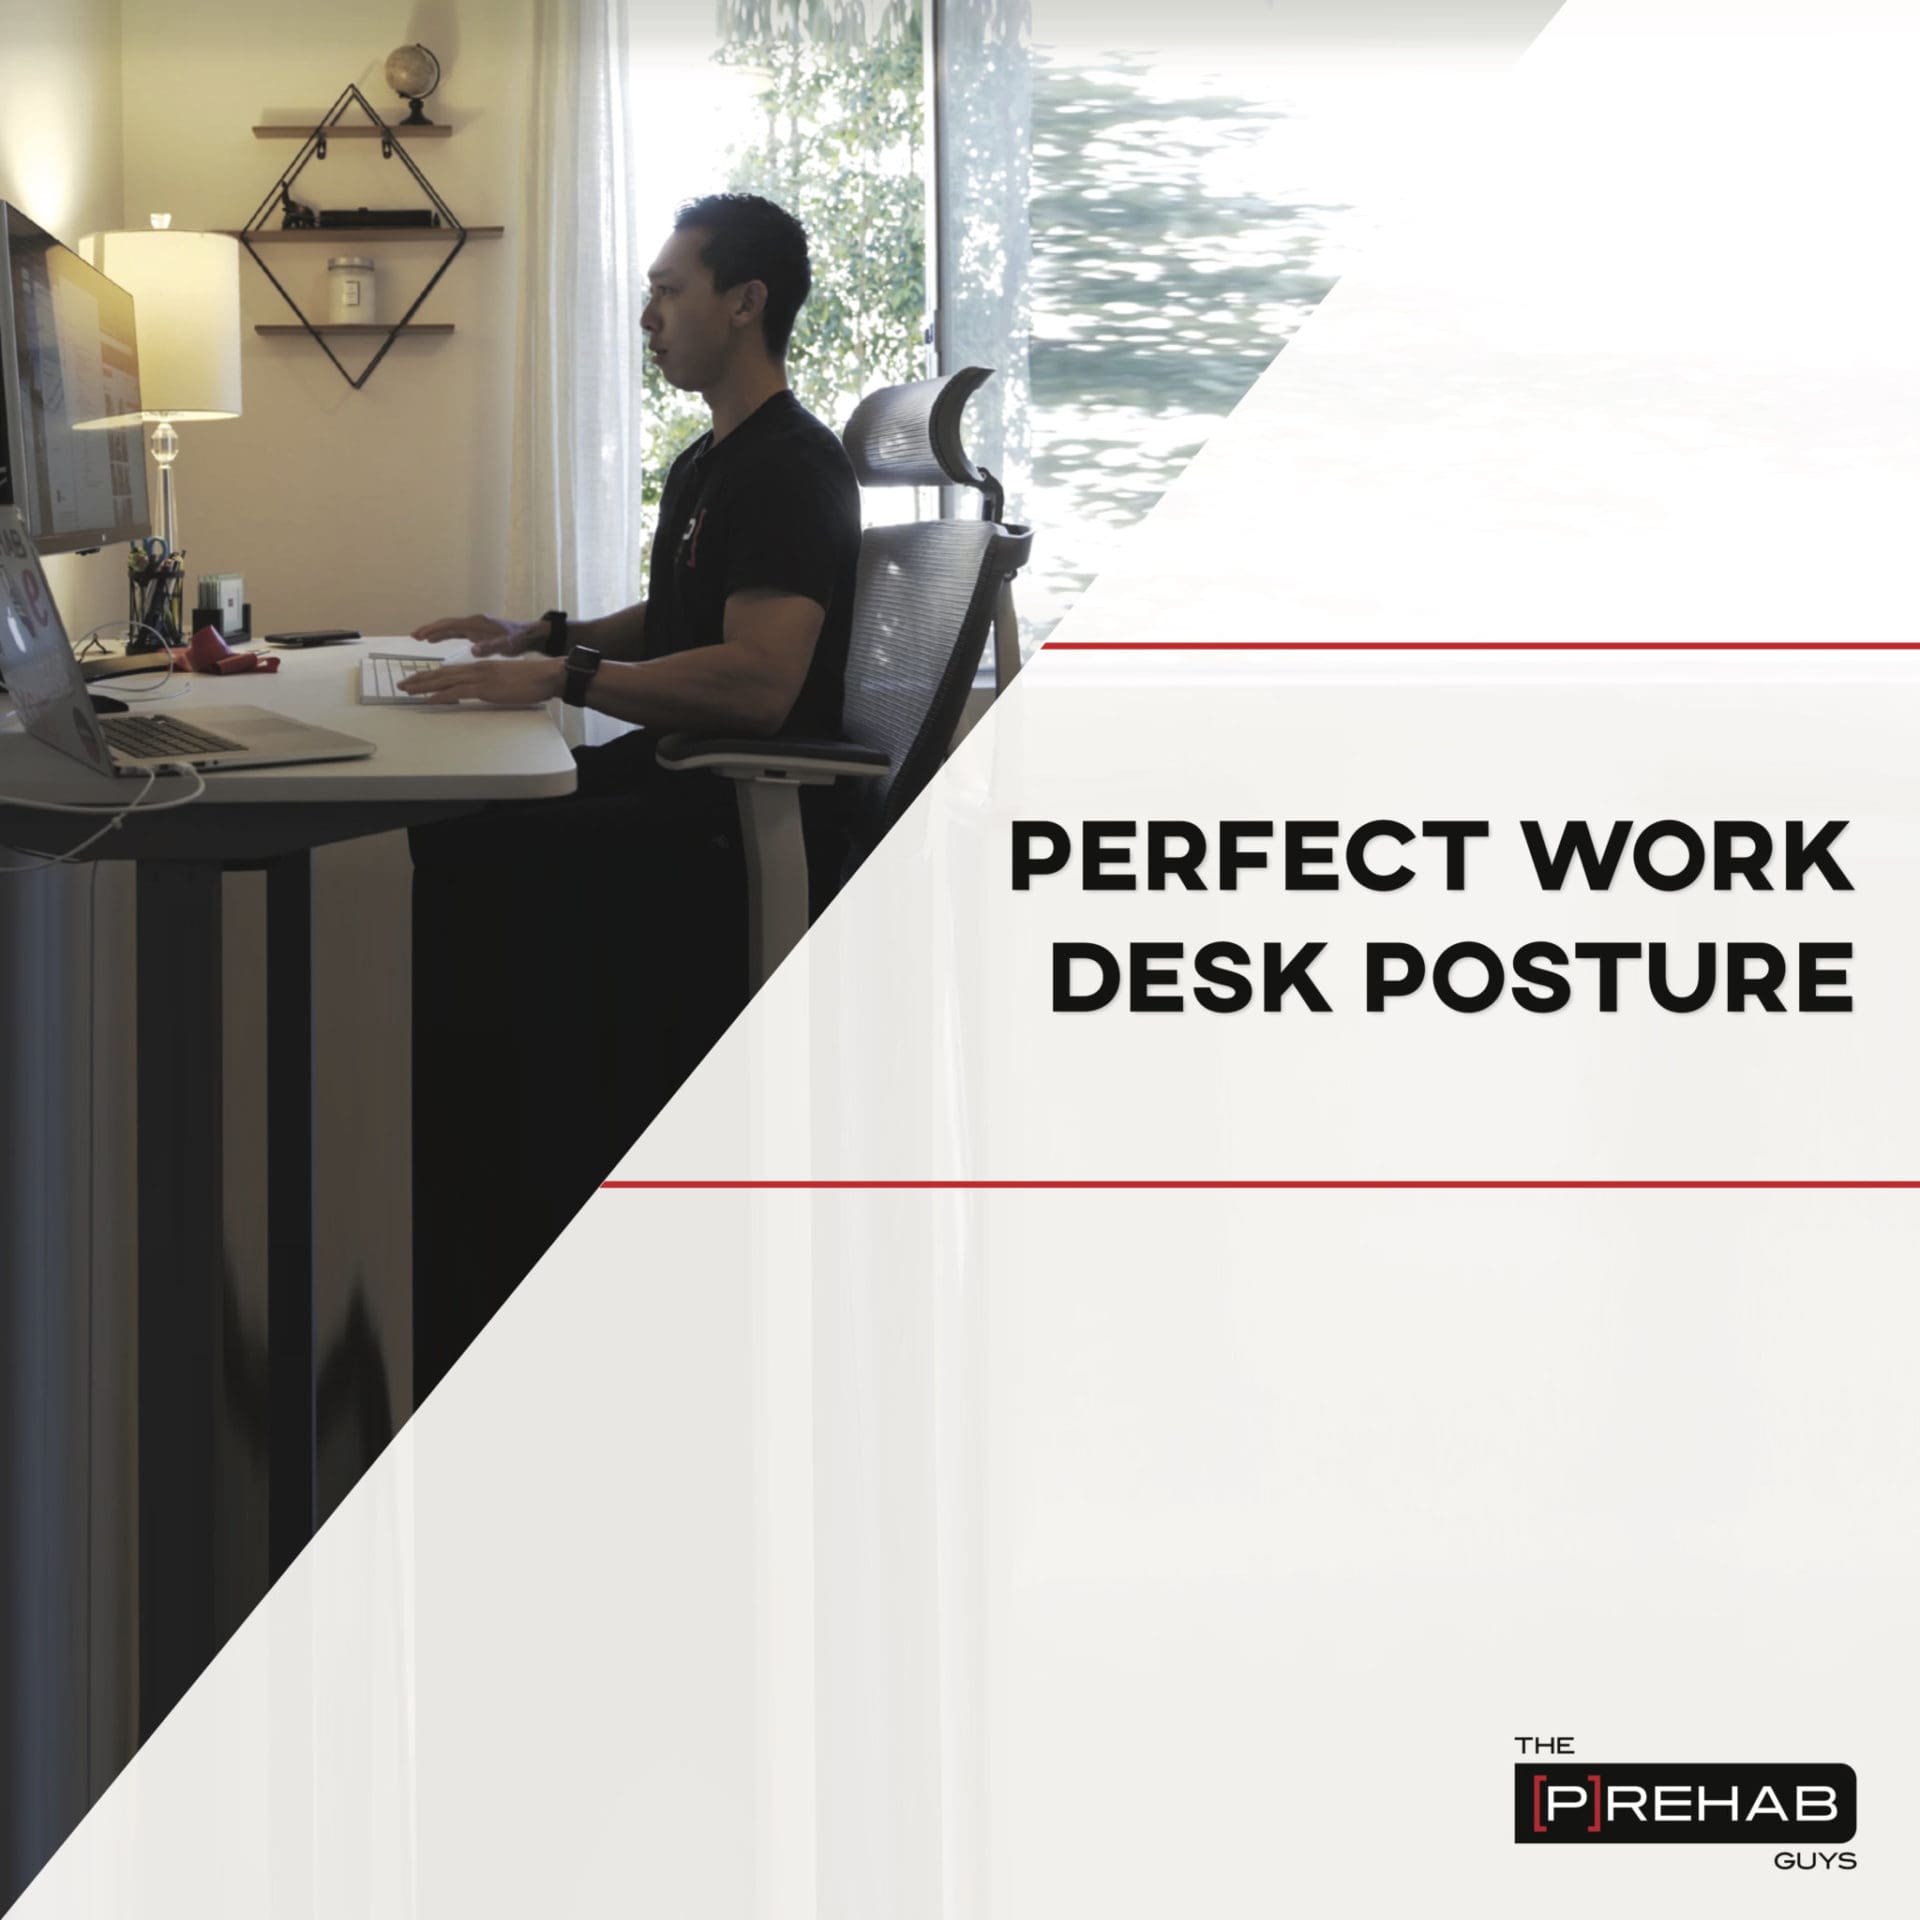 working desk posture prehab guys low back paiin